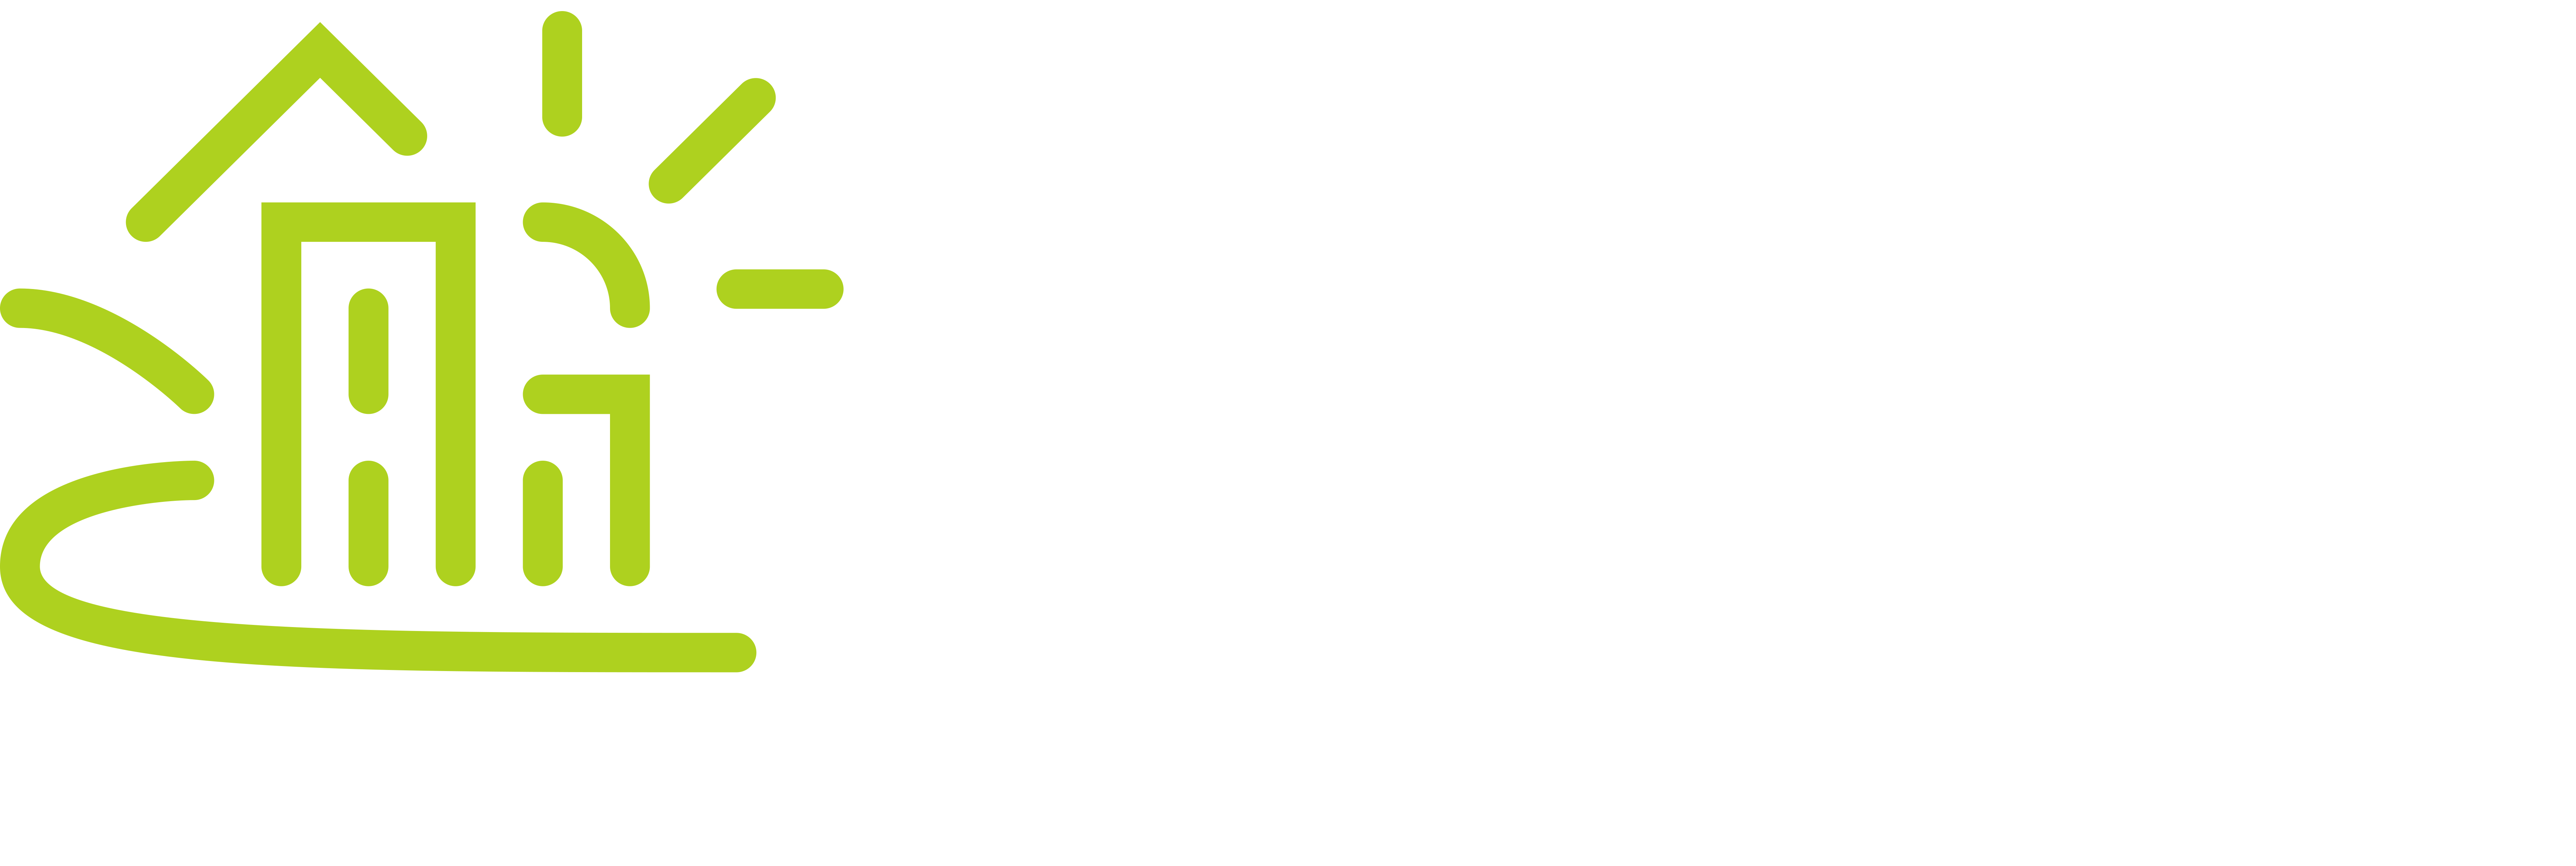 OurHealth Lynchburg Nov/Dec 2017 by OurHealth Media LLC - Issuu